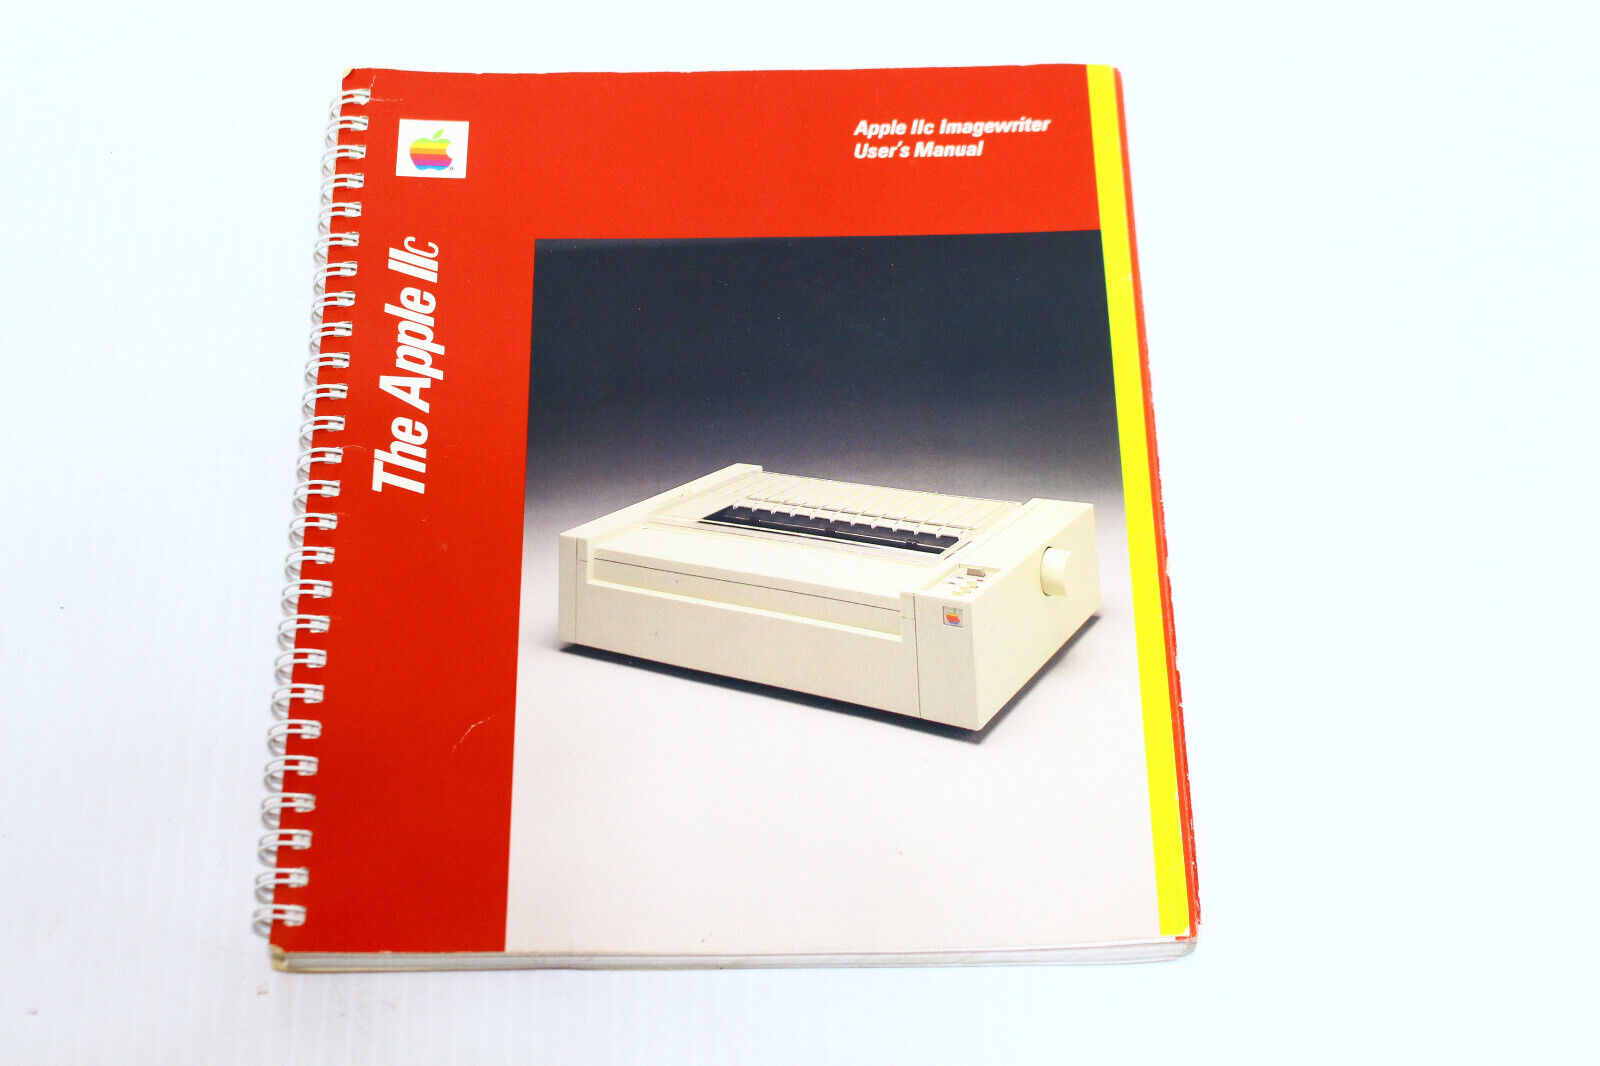 Vintage Apple IIc Imagewriter Printer User's Manual